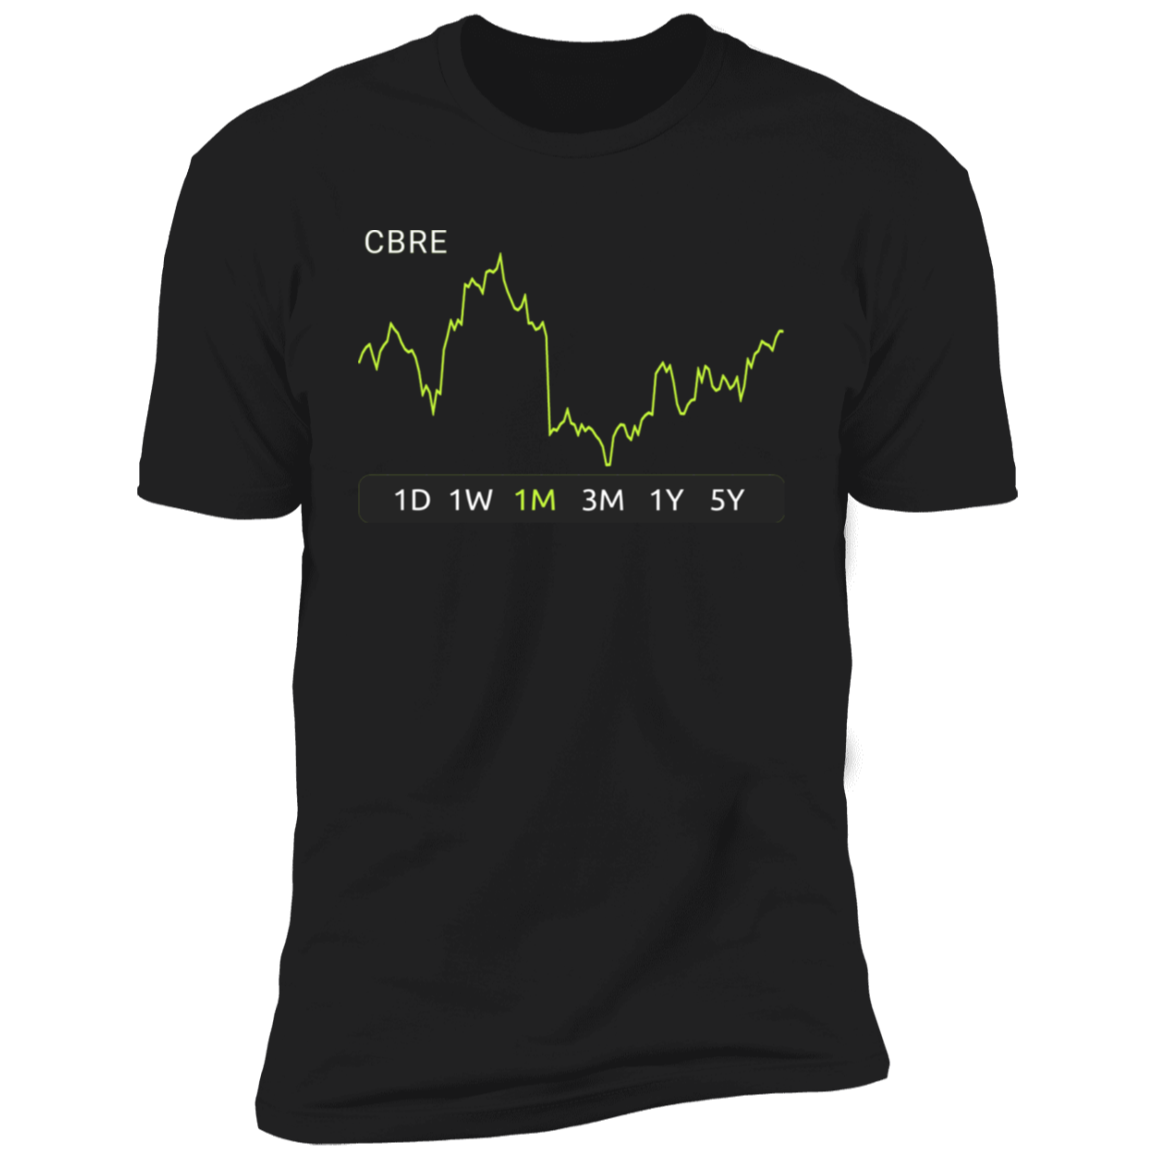 CBRE Stock 1m Premium T-Shirt